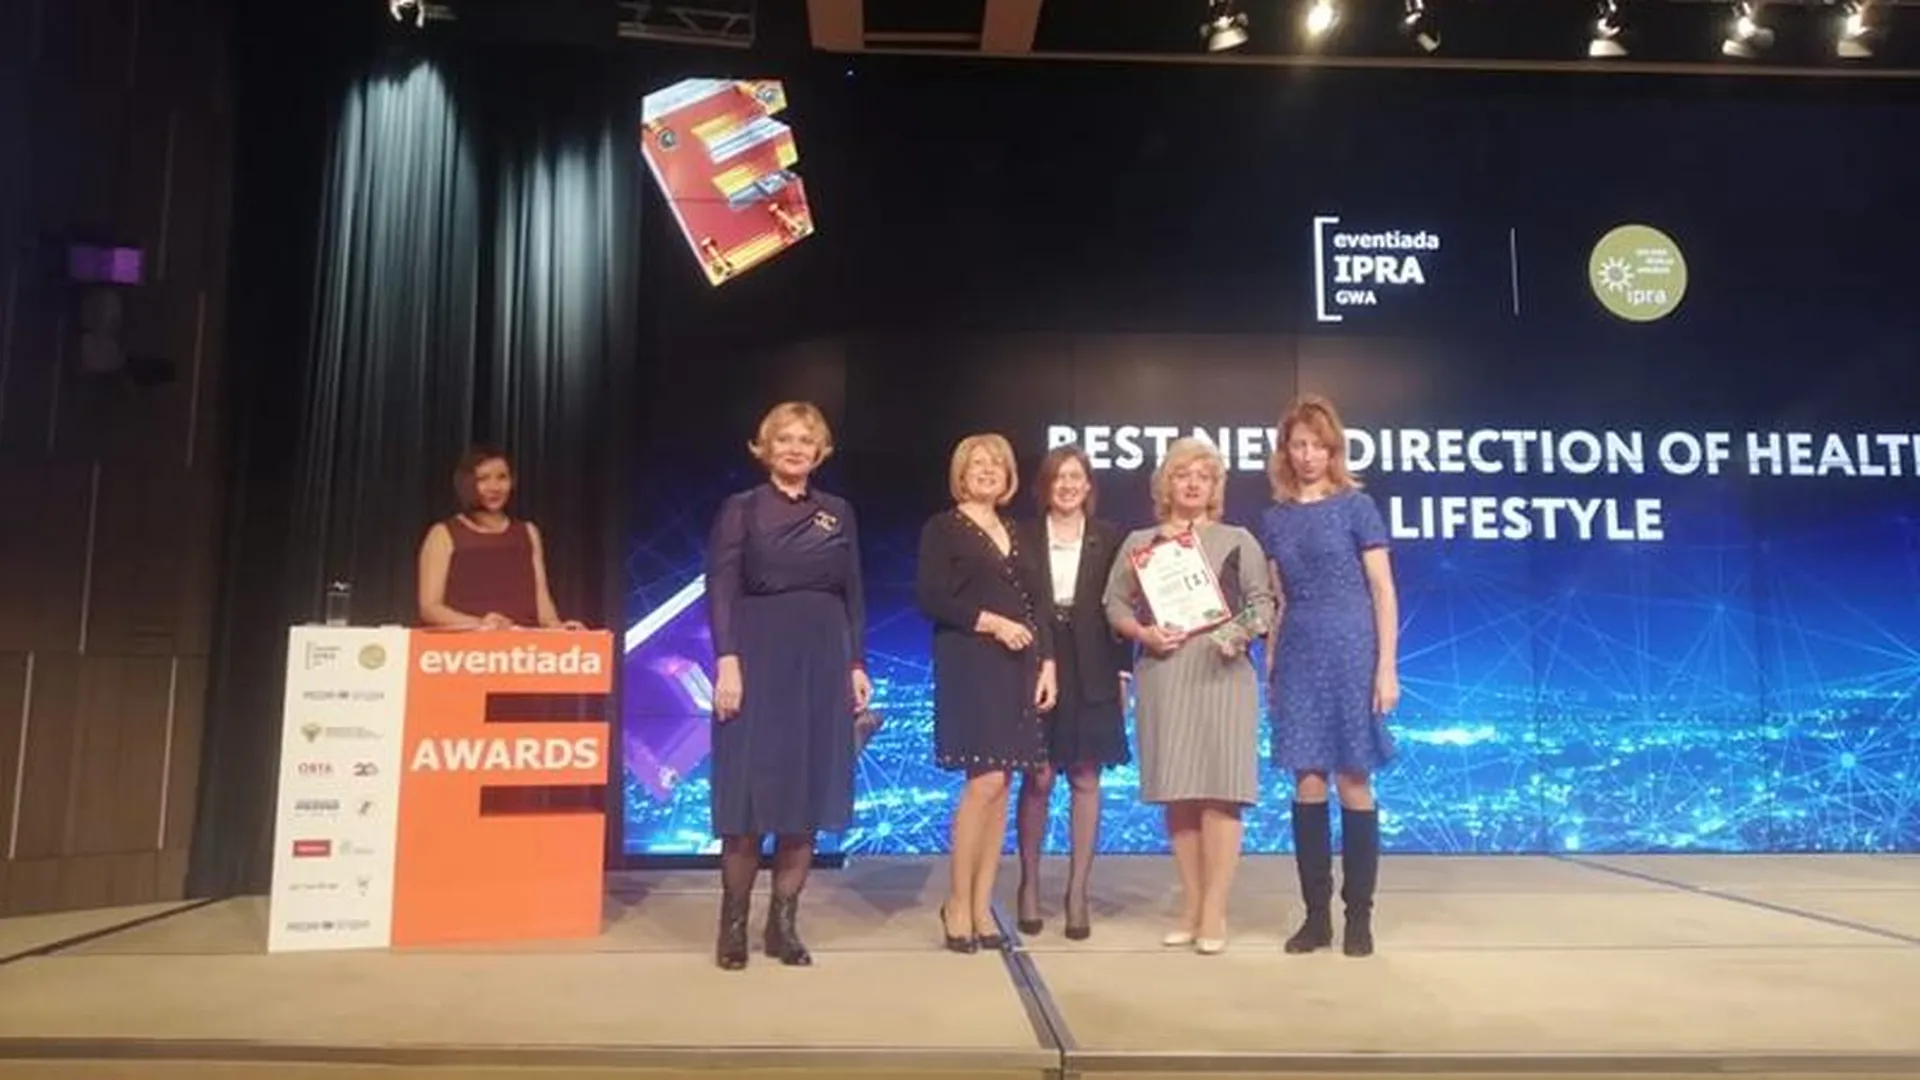 Студенты из Подмосковья стали победителями престижной международной премии благодаря подарку на выпускной 